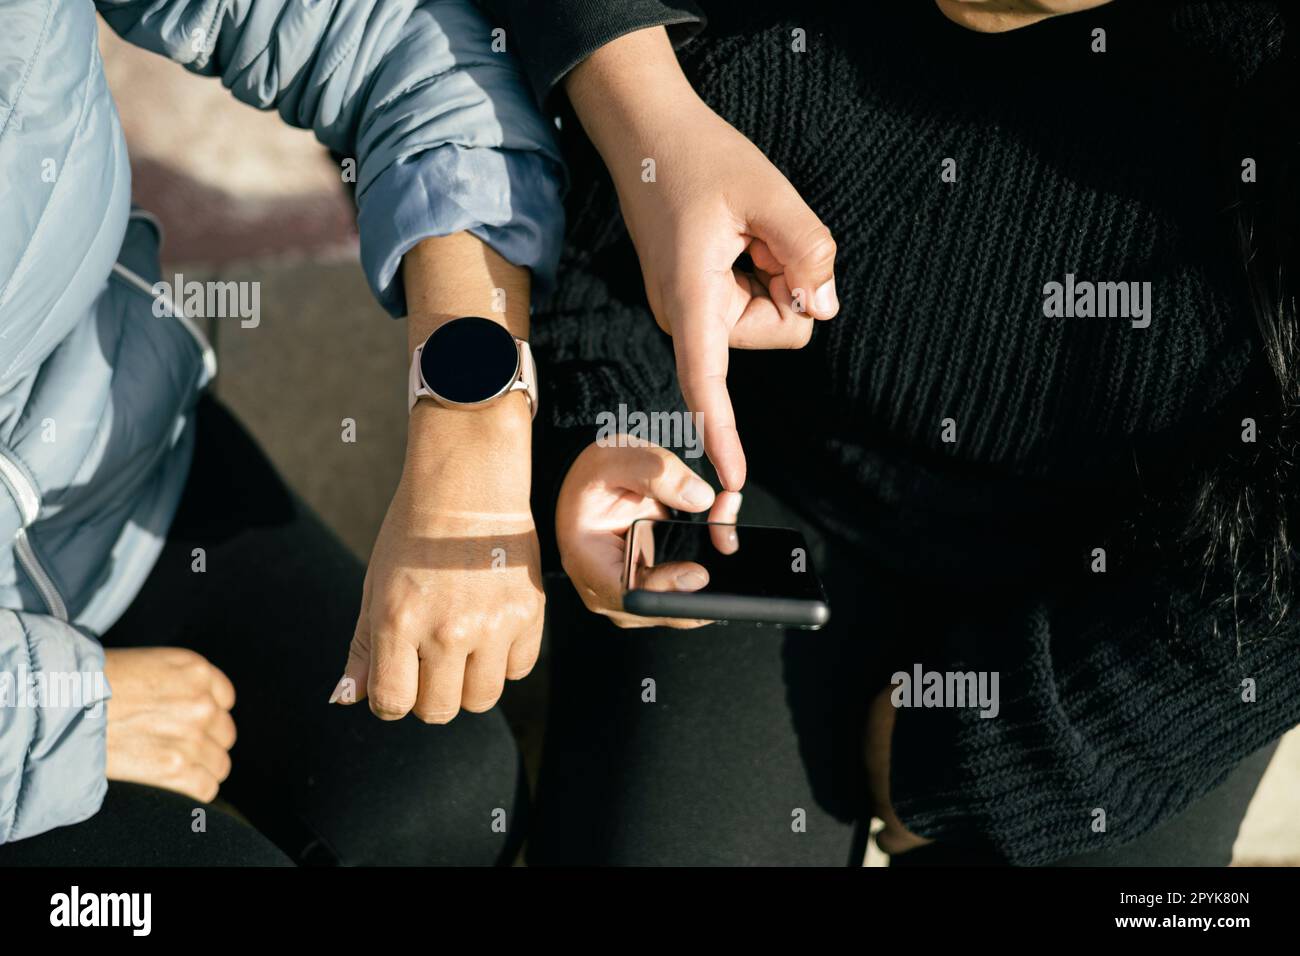 Trois personnes latines utilisant leurs appareils mobiles et en interagissant entre elles Banque D'Images